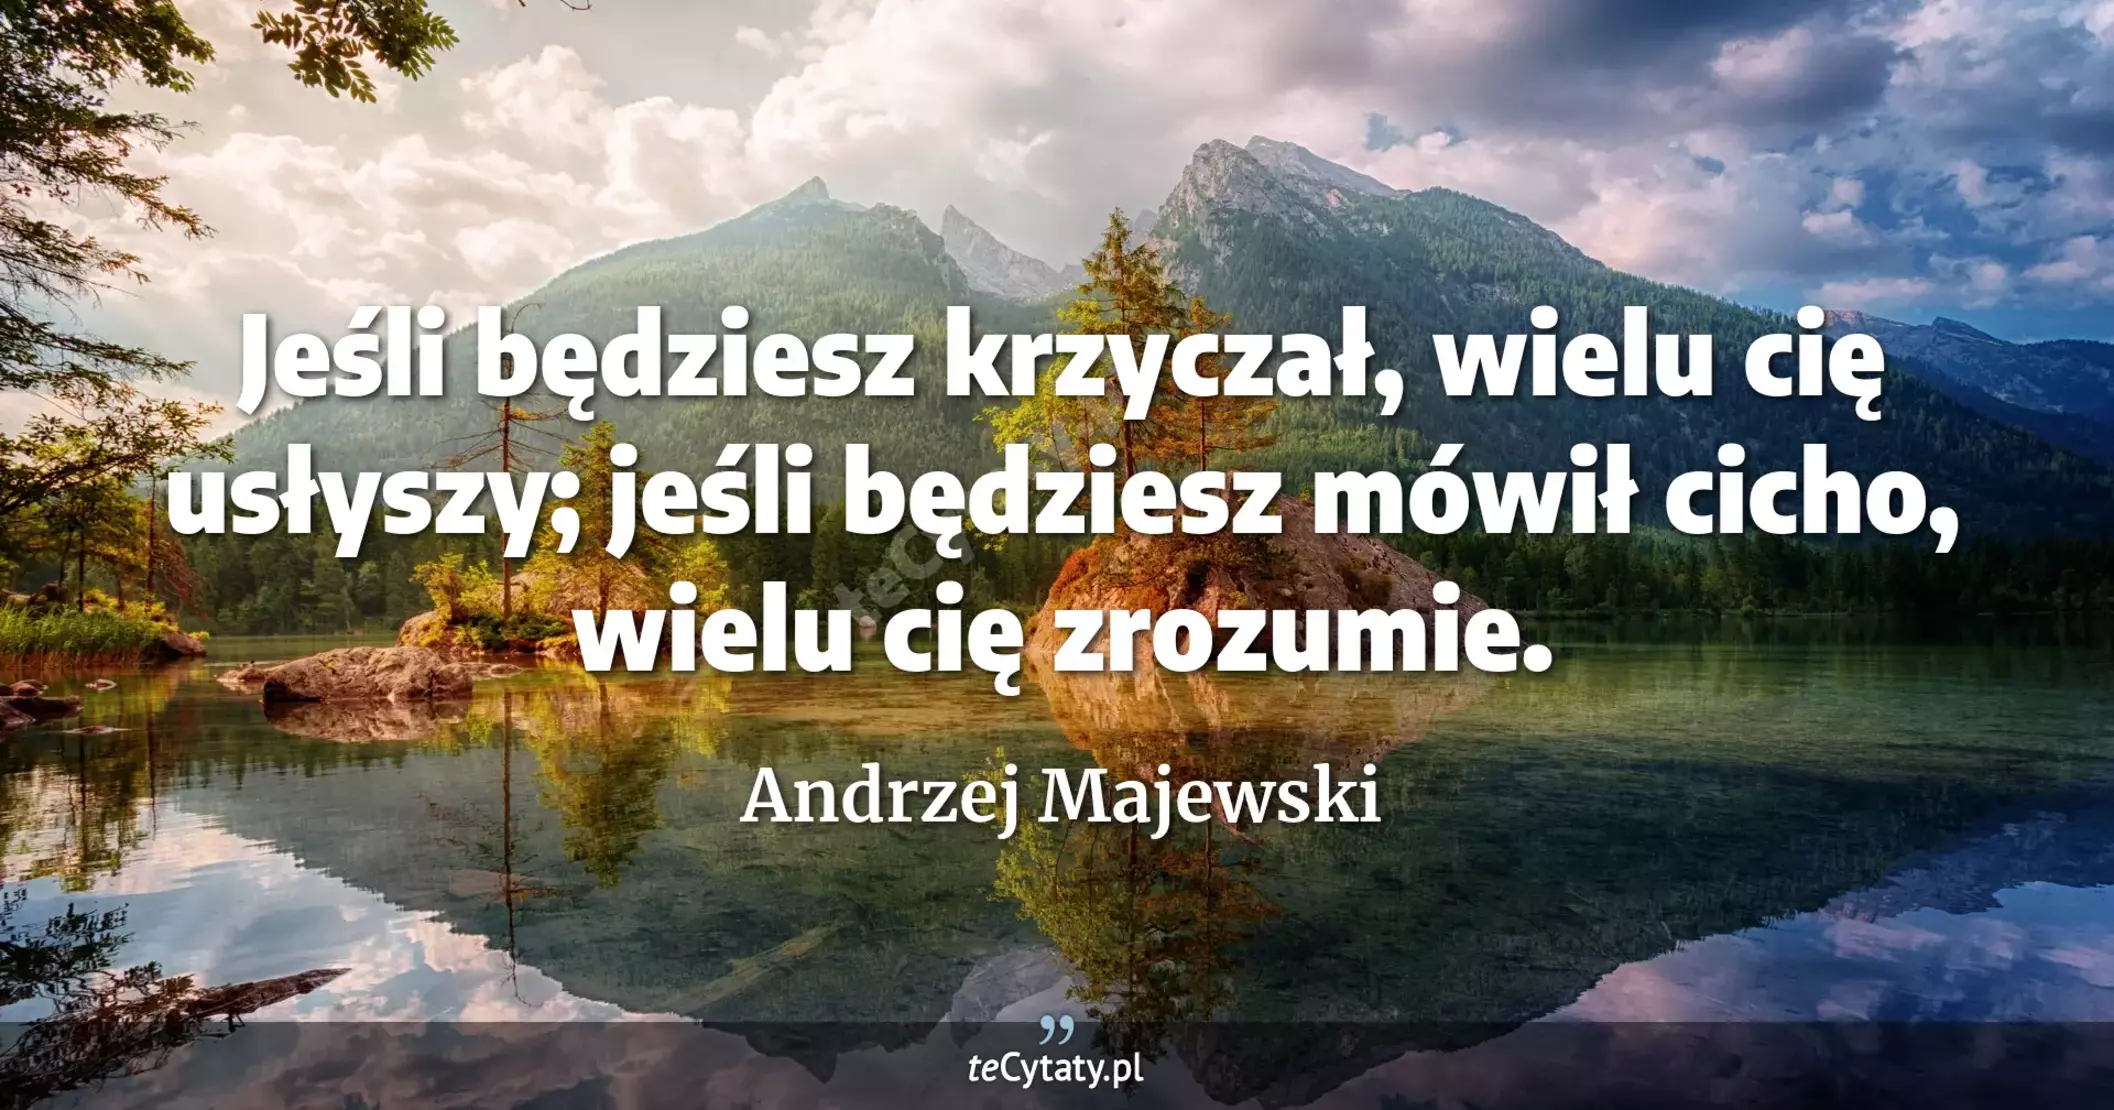 Jeśli będziesz krzyczał, wielu cię usłyszy; jeśli będziesz mówił cicho, wielu cię zrozumie. - Andrzej Majewski